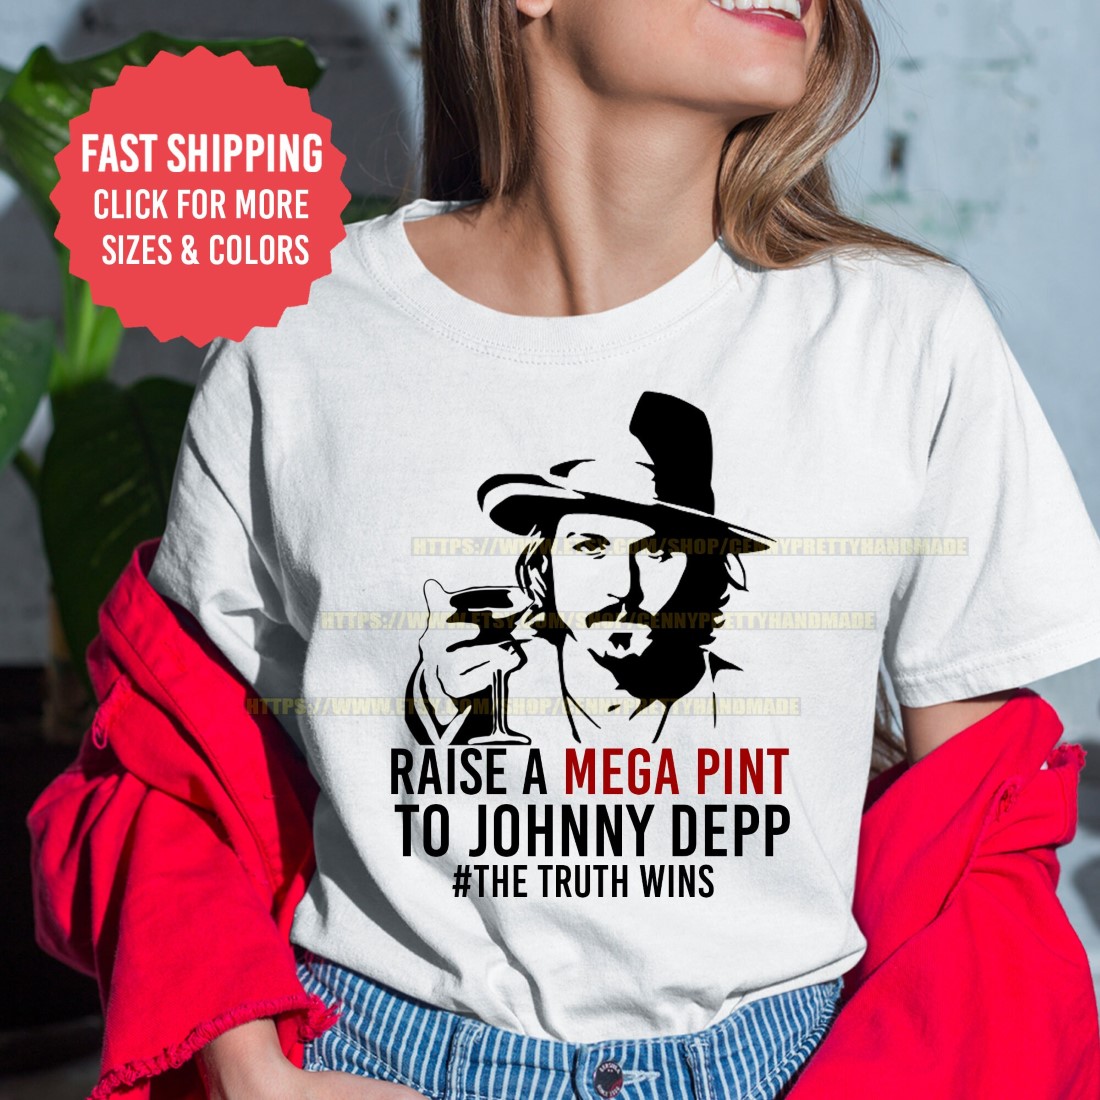 Raise a Mega Pint to Johnny Depp T Shirt